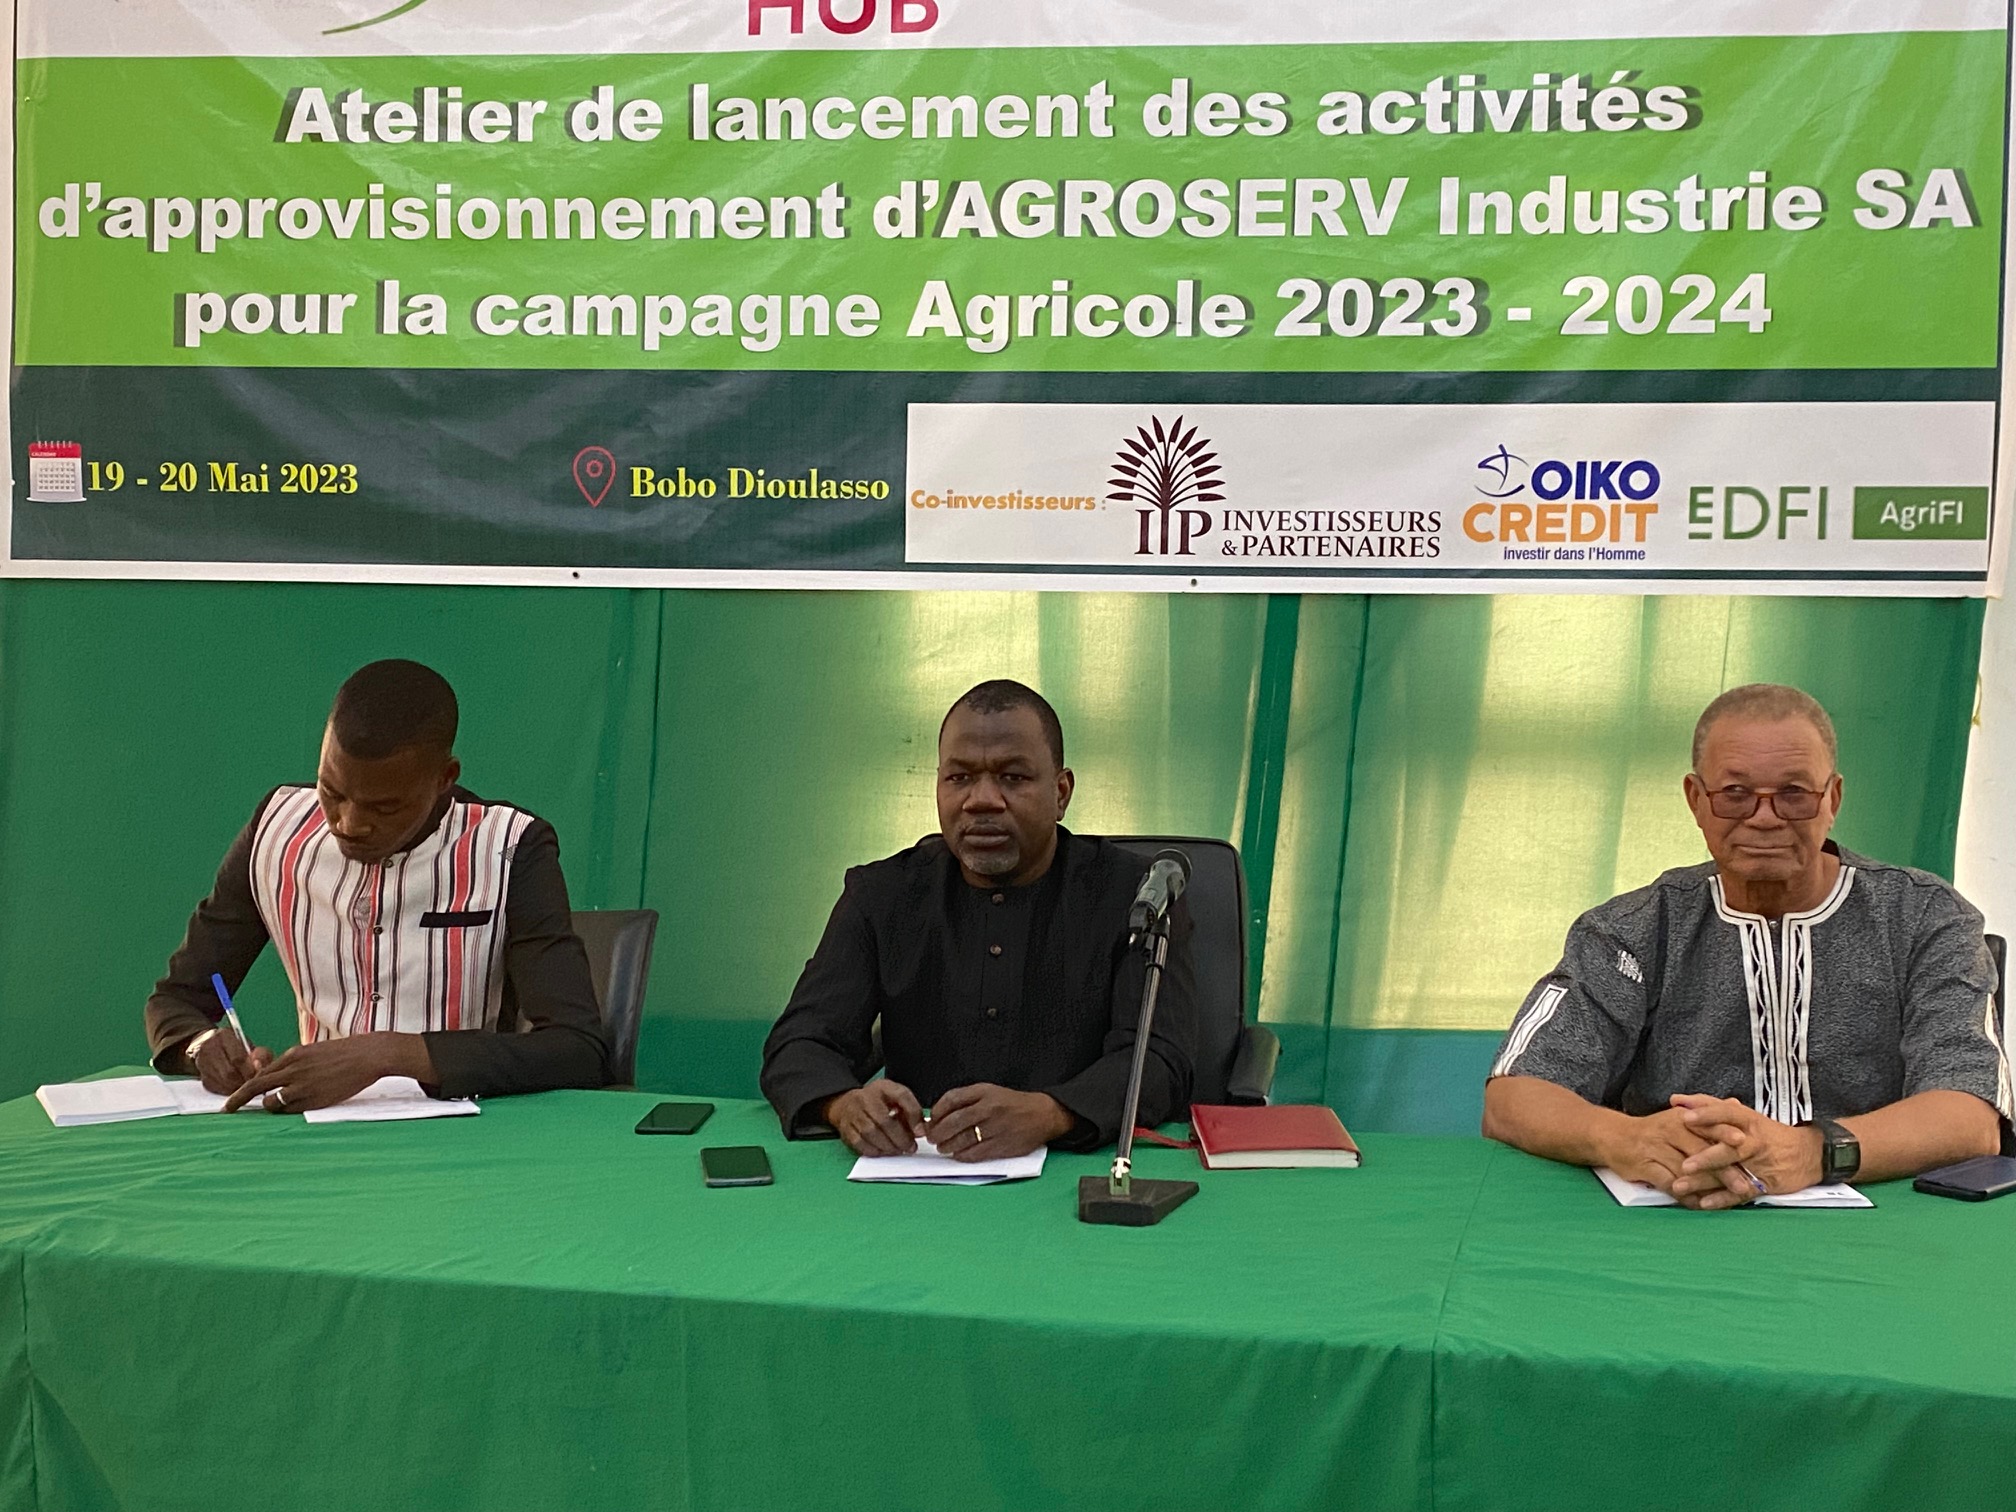 Campagne agricole 2023-2024 : Agroserv Industrie SA lance ses activités d’approvisionnement à Bobo Dioulasso